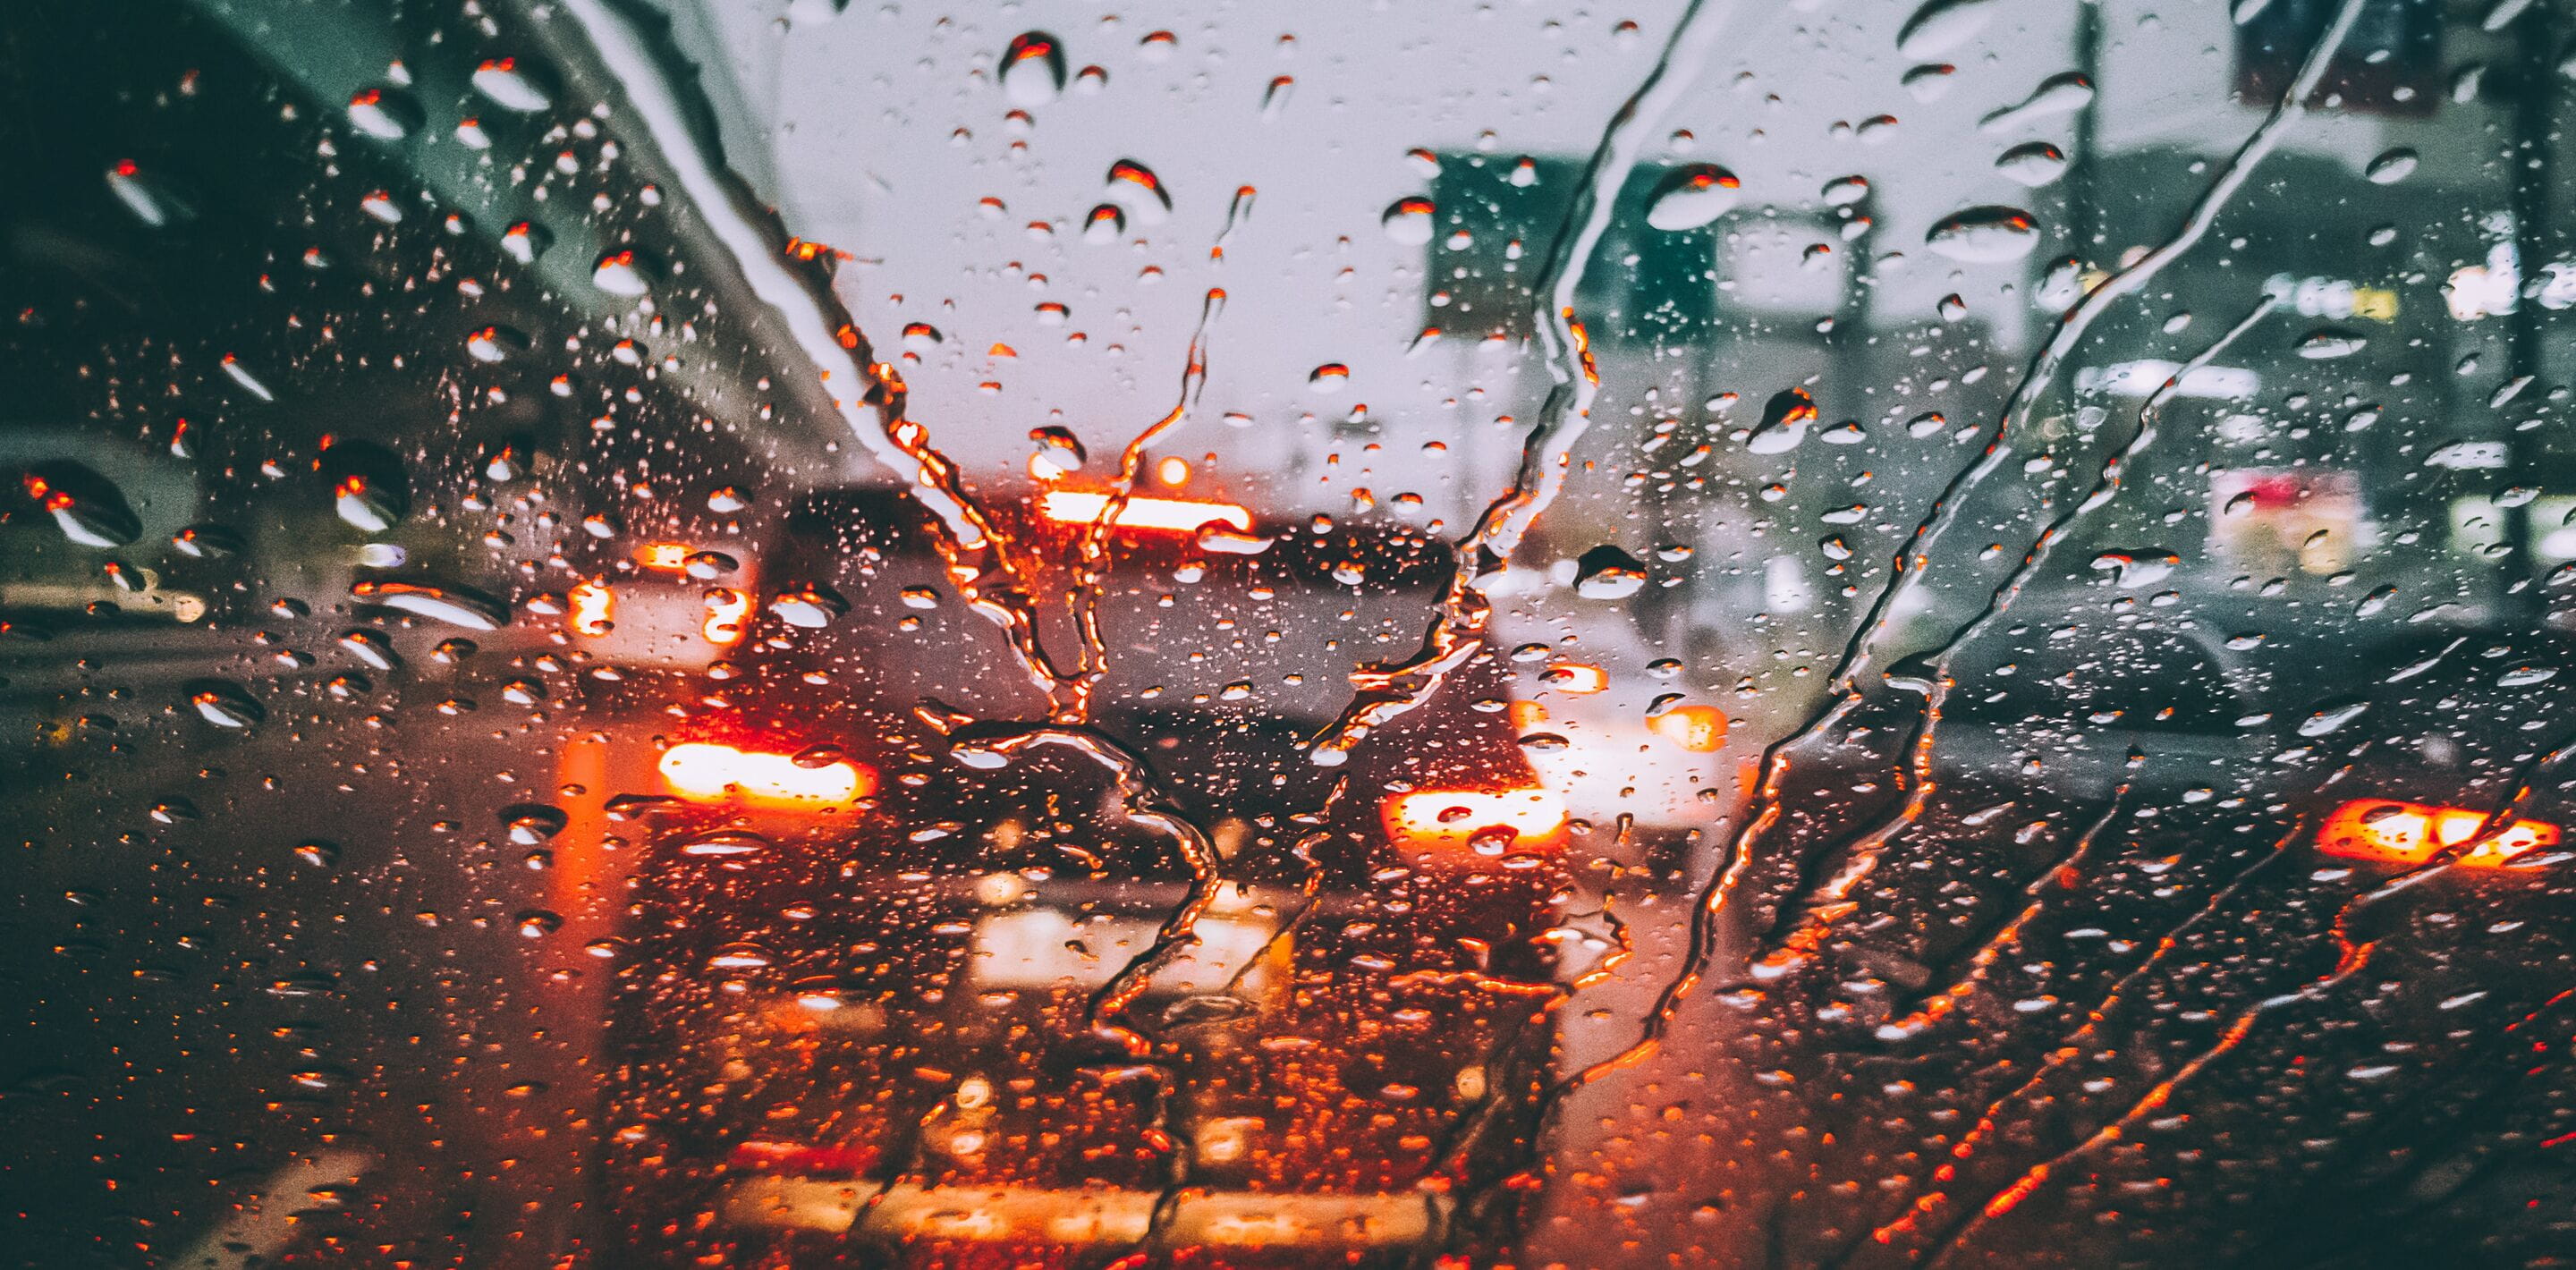 wet car's front window